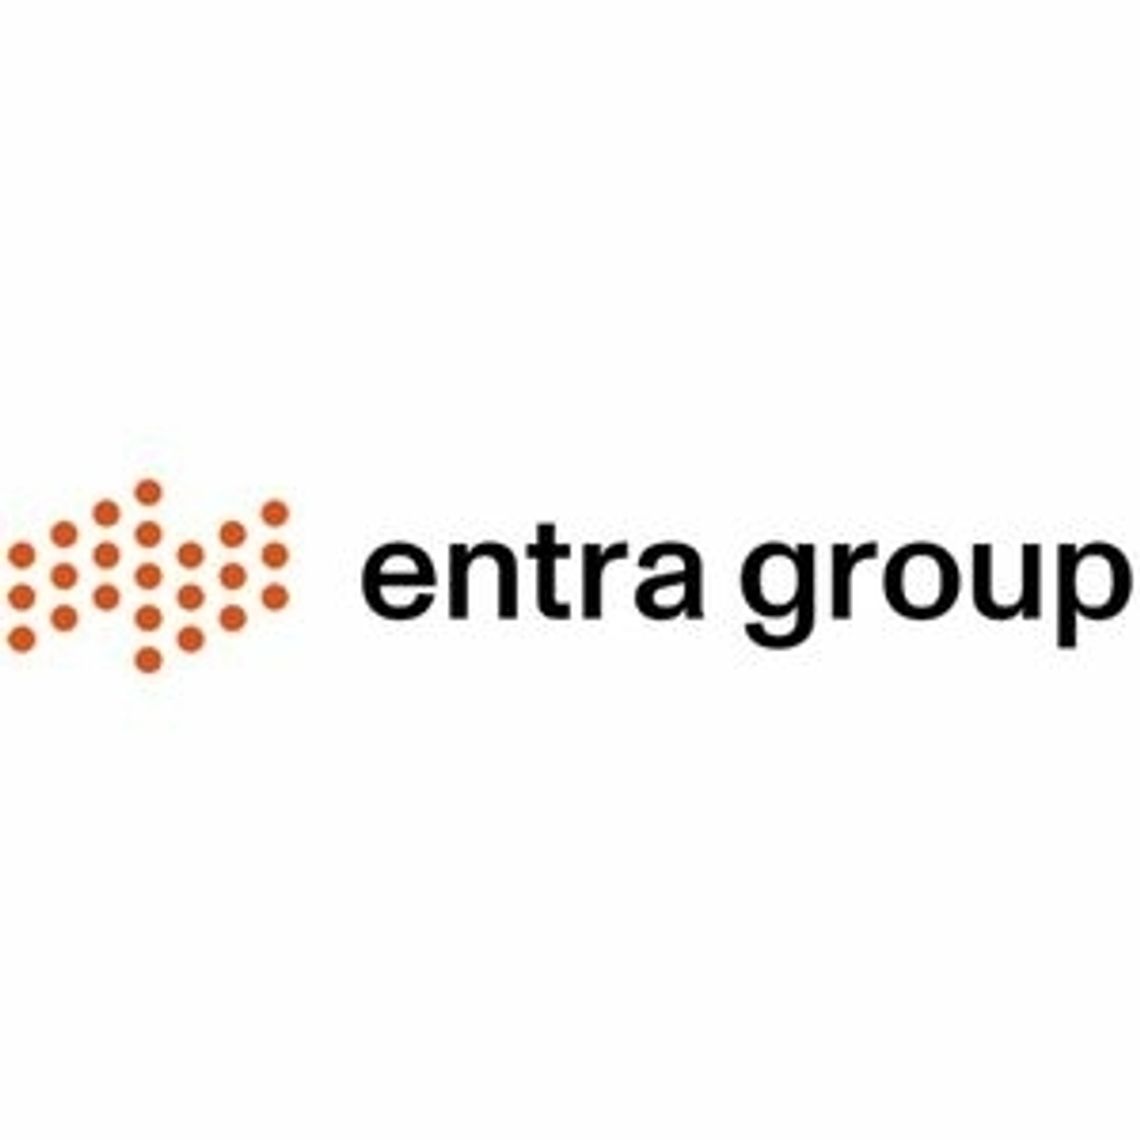 Planowanie Operacyjne dla całej organizacji - Entra Group